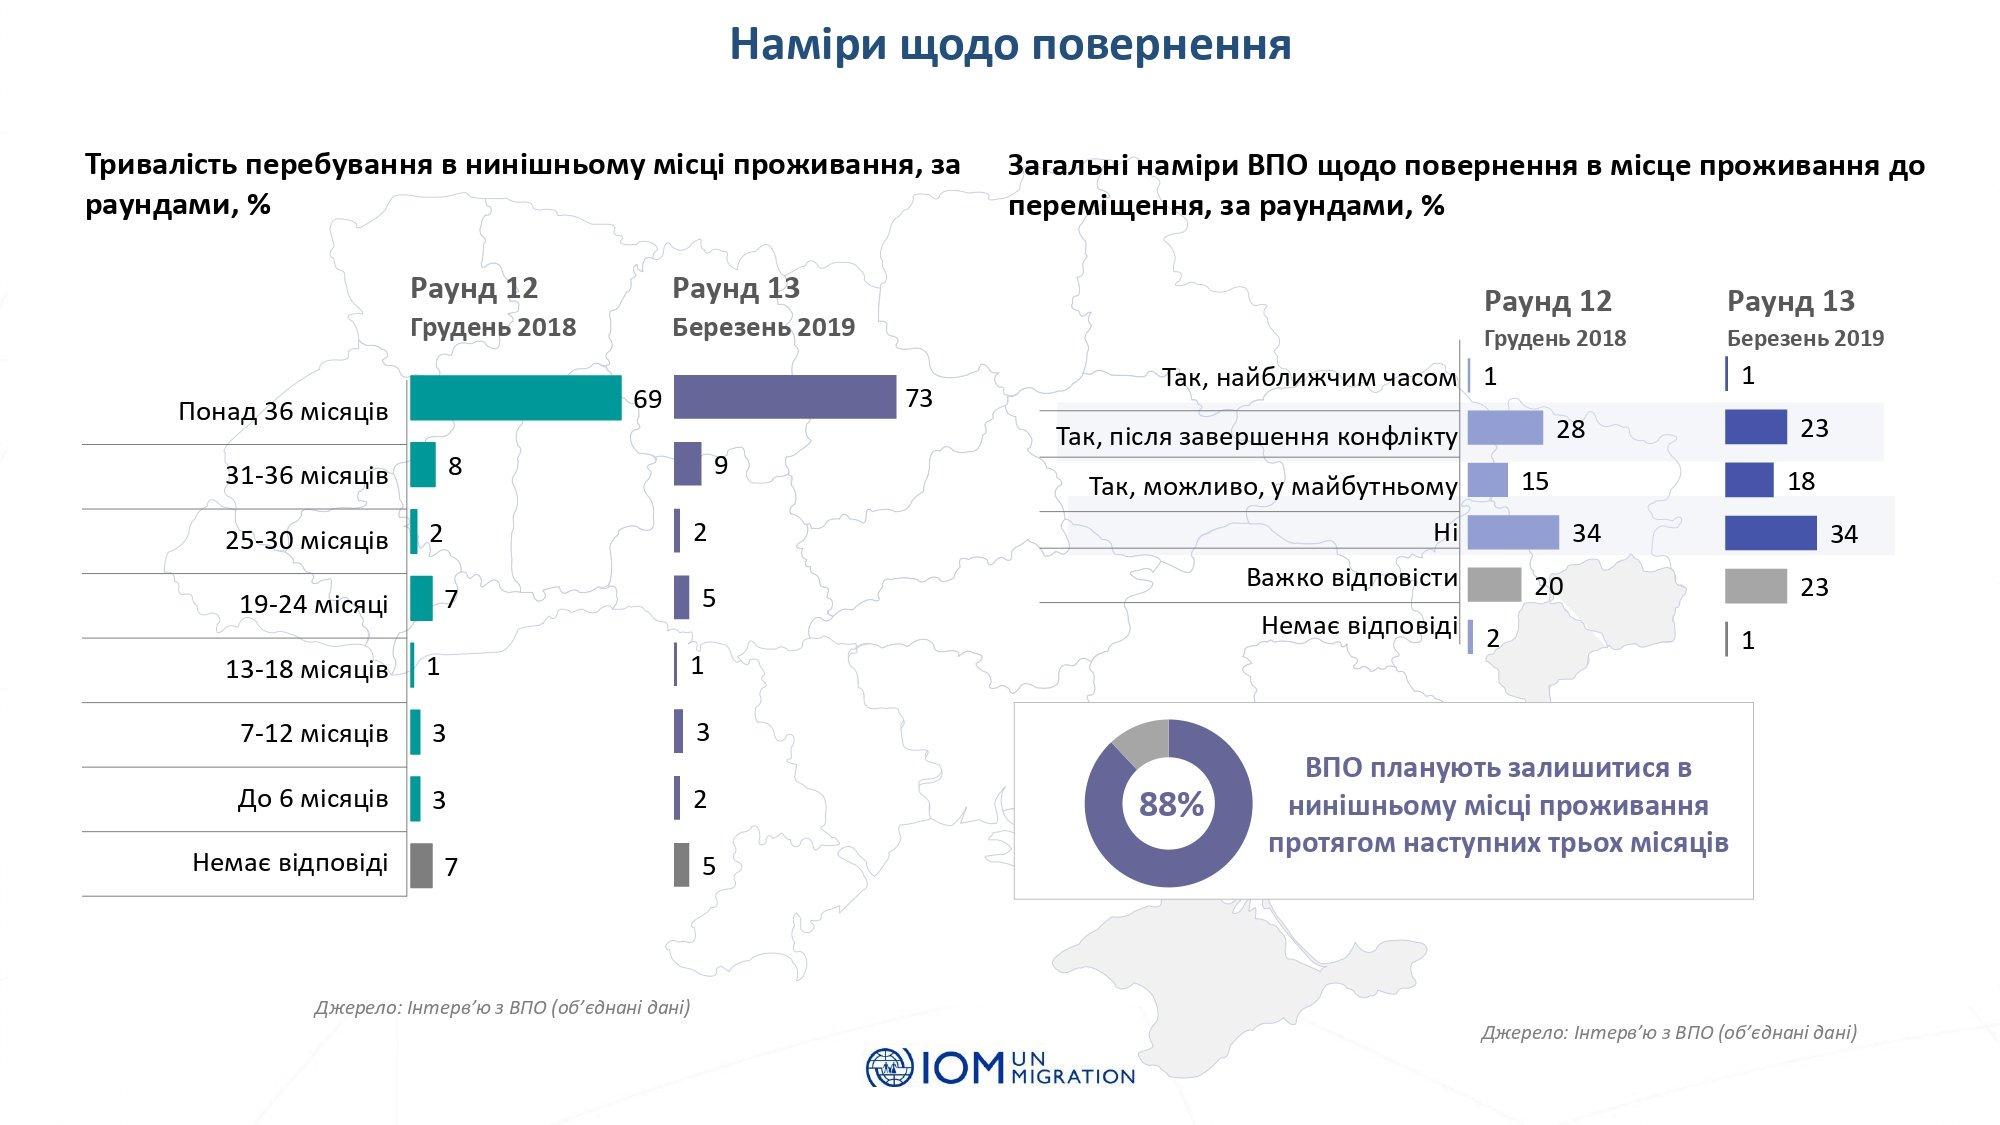 После завершения военных действий на Донбасс готовы вернуться 23% переселенцев